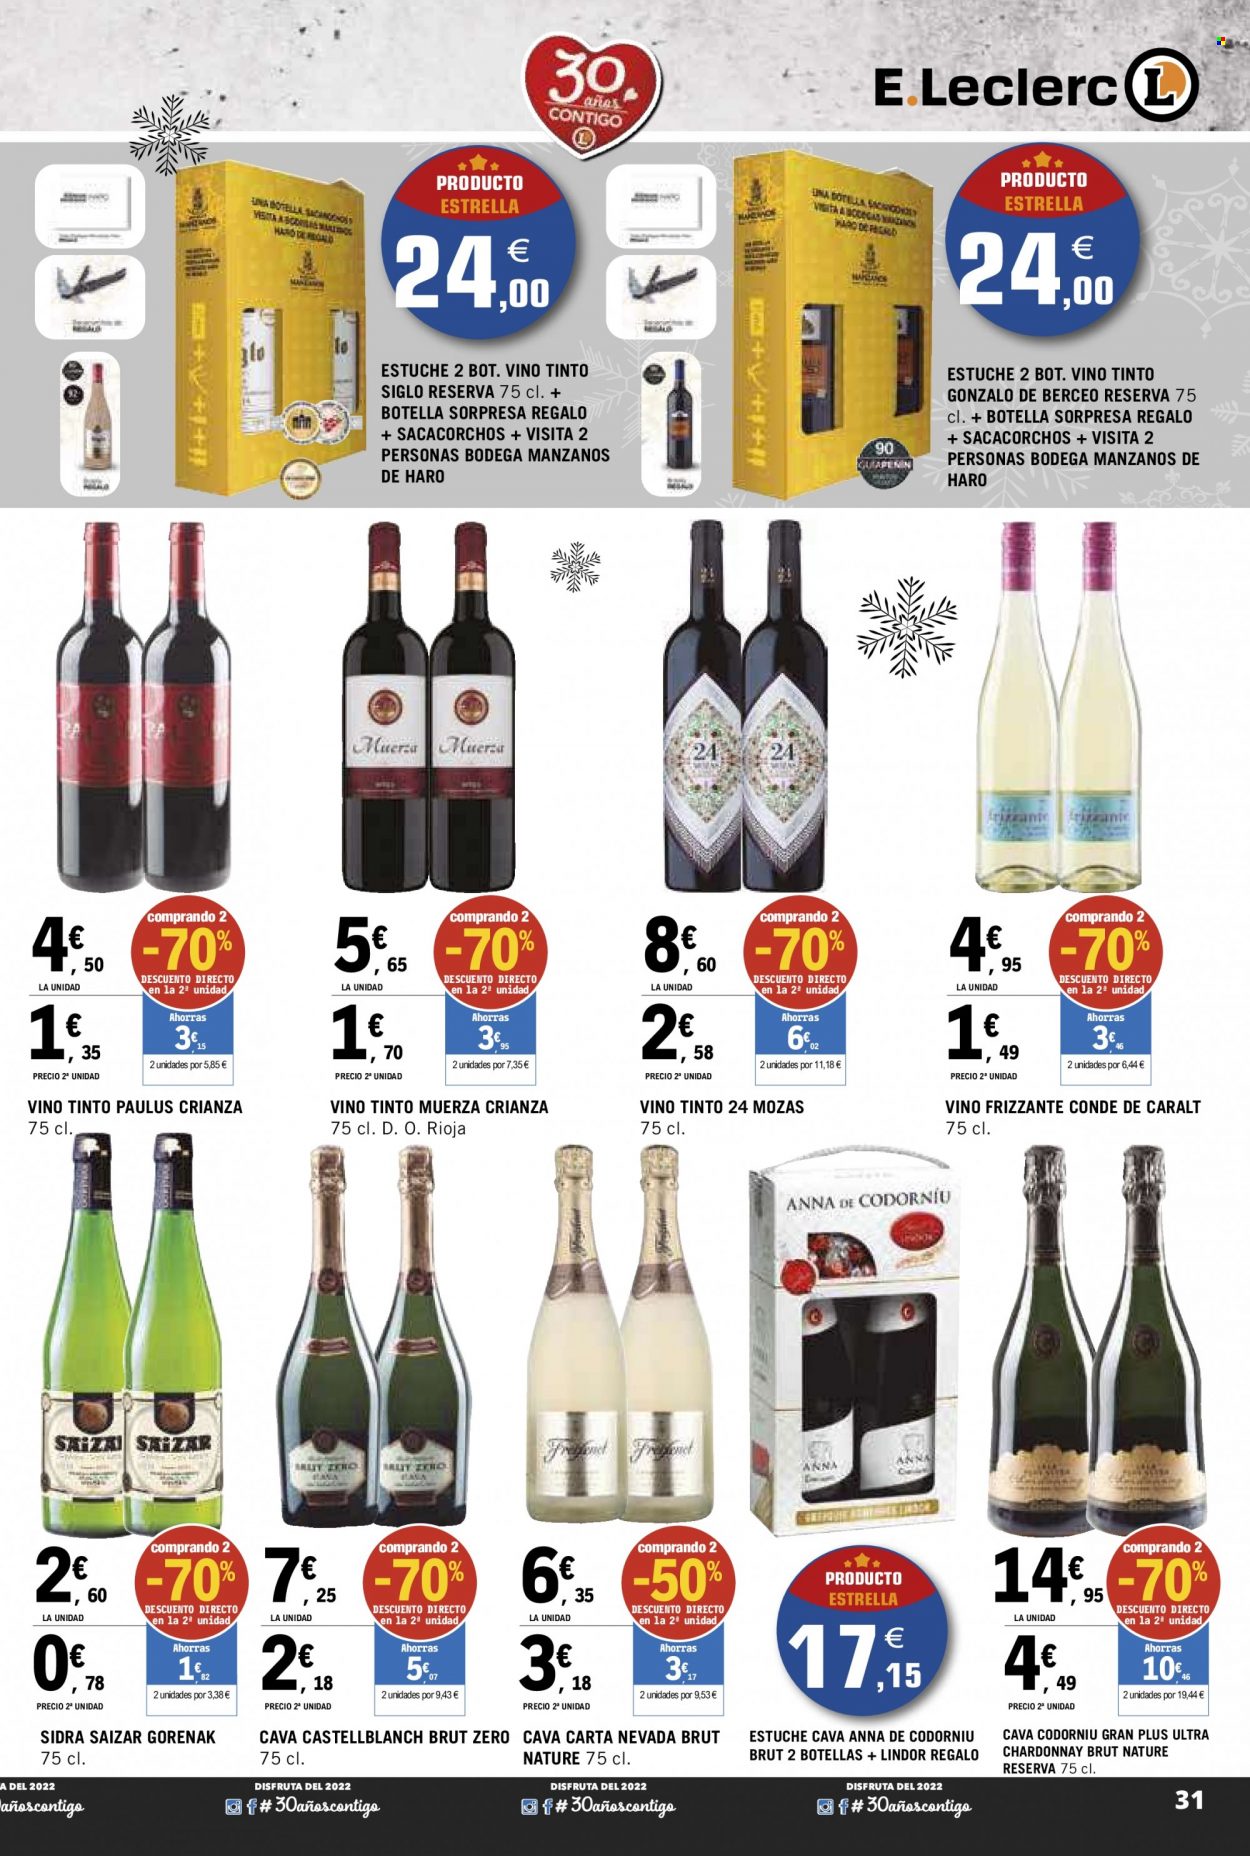 thumbnail - Folleto actual E.Leclerc - 23/11/22 - 03/12/22 - Ventas - bebida alcohólica, Crianza, vino, vino tinto, Rioja, vino espumoso, sidra, brut, Cava, Chardonnay, estuche de vinos. Página 31.